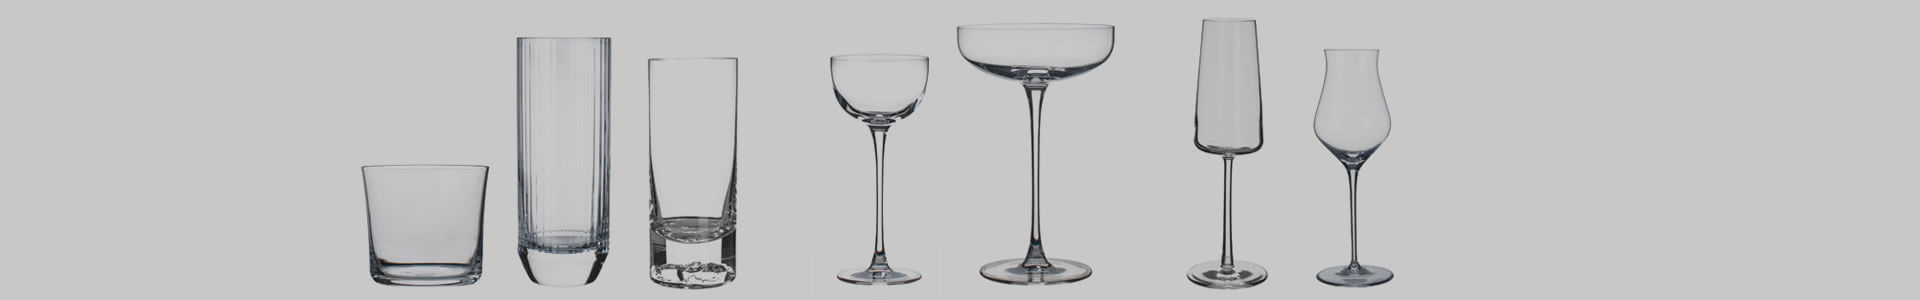 Verschiedene Gläser des Herstellers Nude Glas stehen nebeneinander.